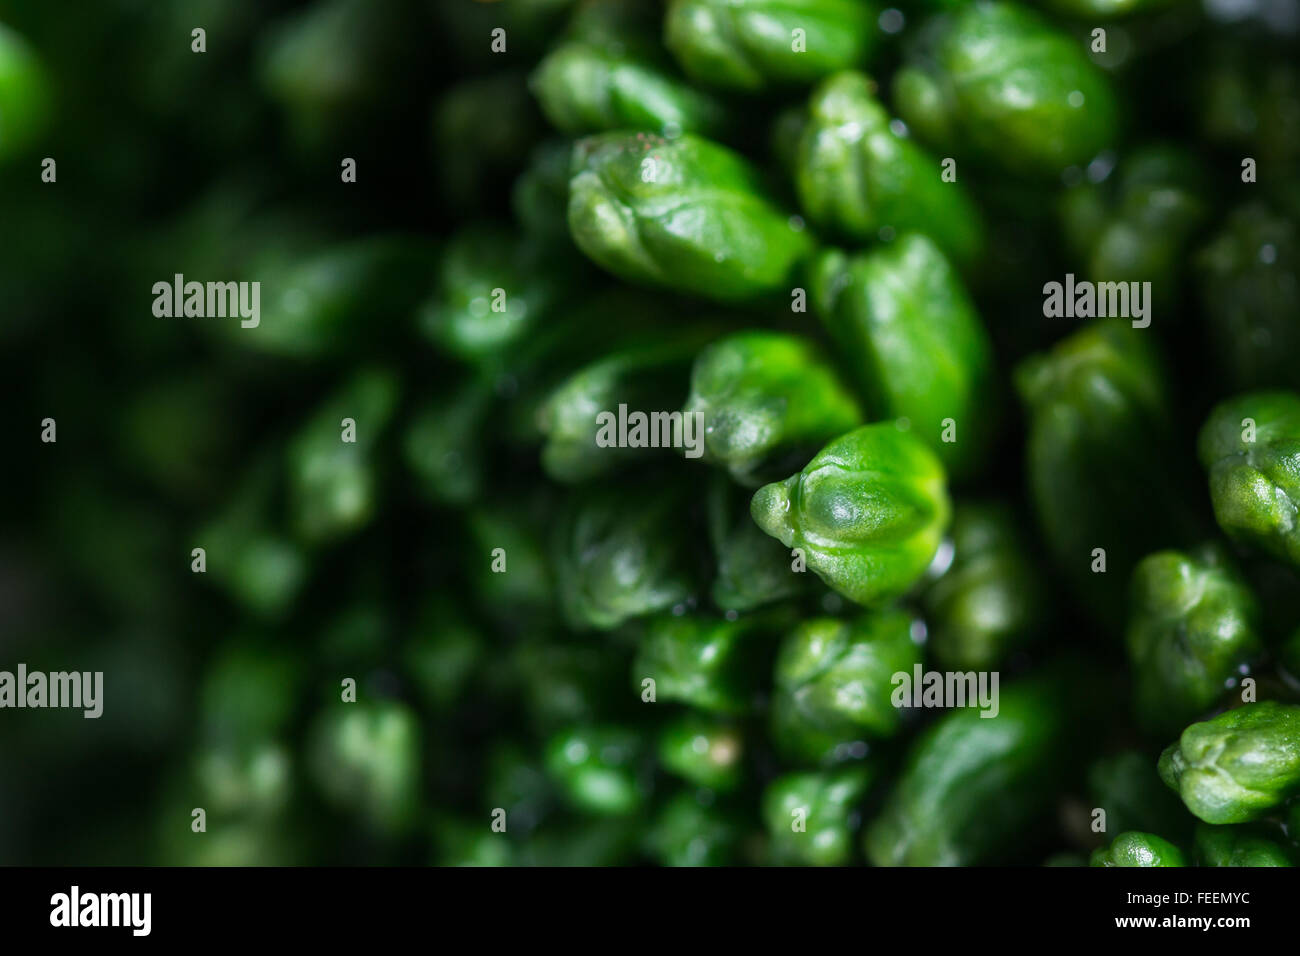 Close up di dettaglio di ciascuna flotta in questo organico broccolini con condimenti colorati Foto Stock